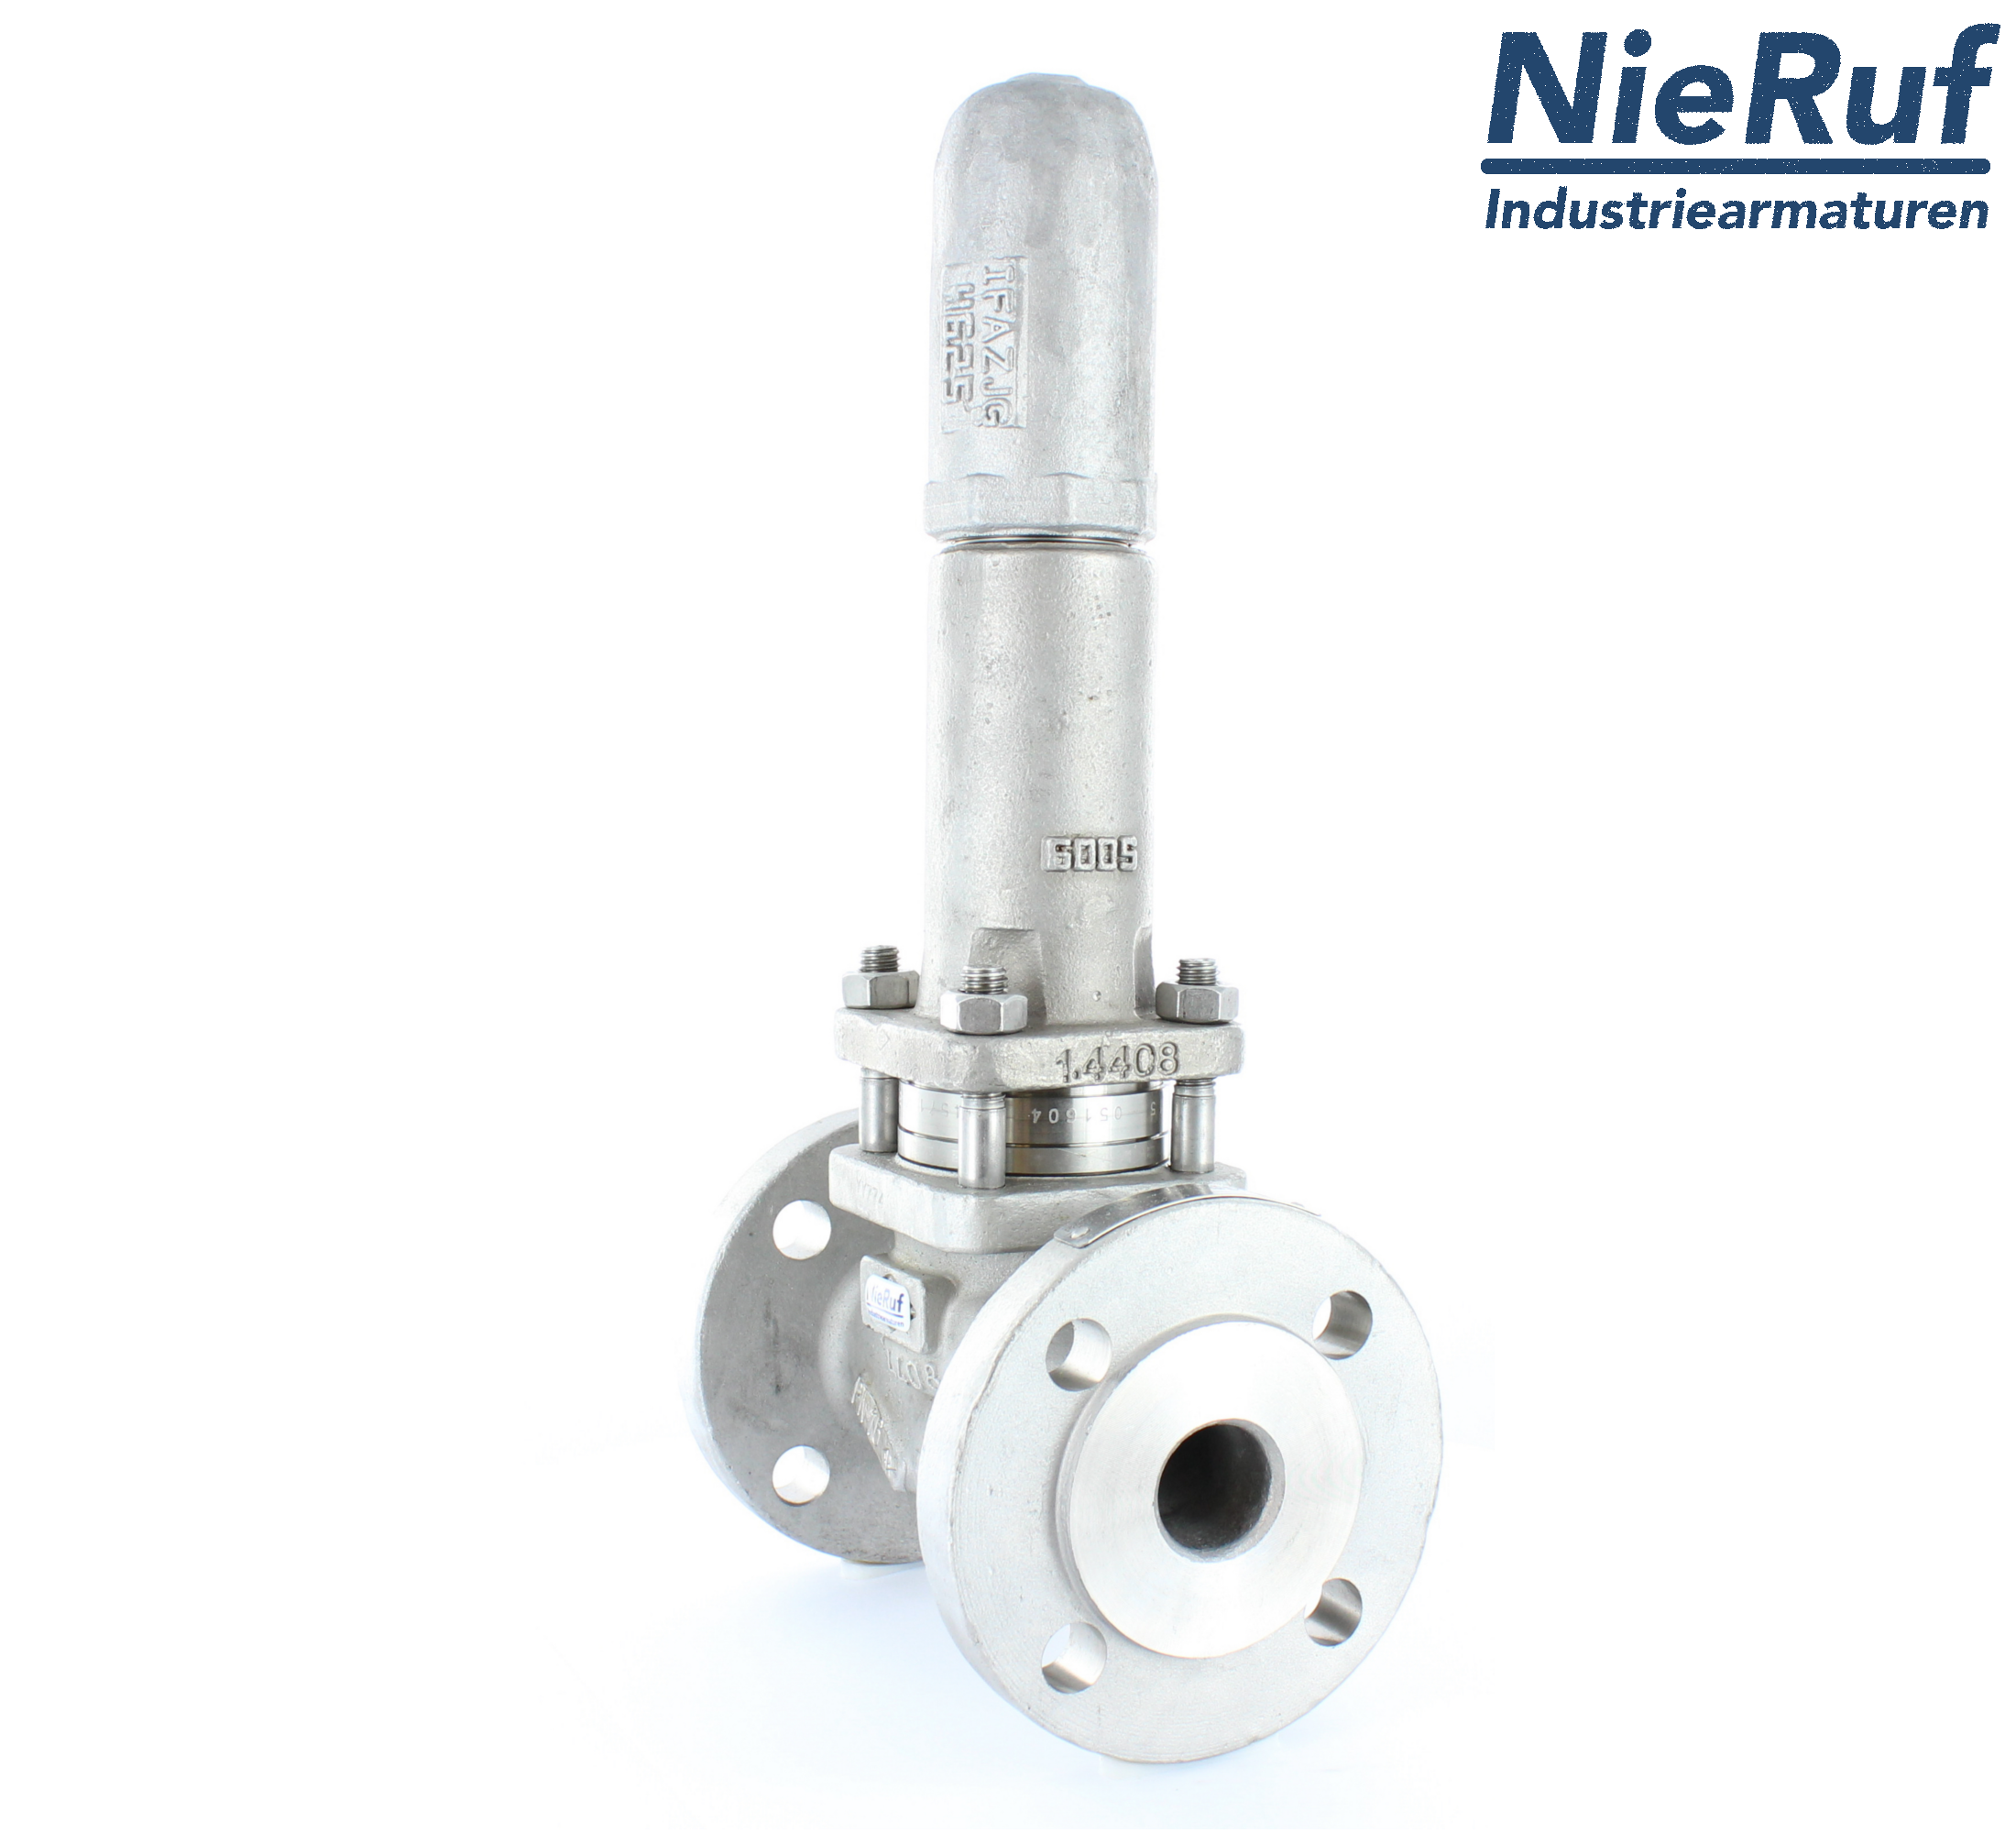 piston overflow valve DN 25 UV13 cast iron 1.0619+N 4,0 - 10,0 bar